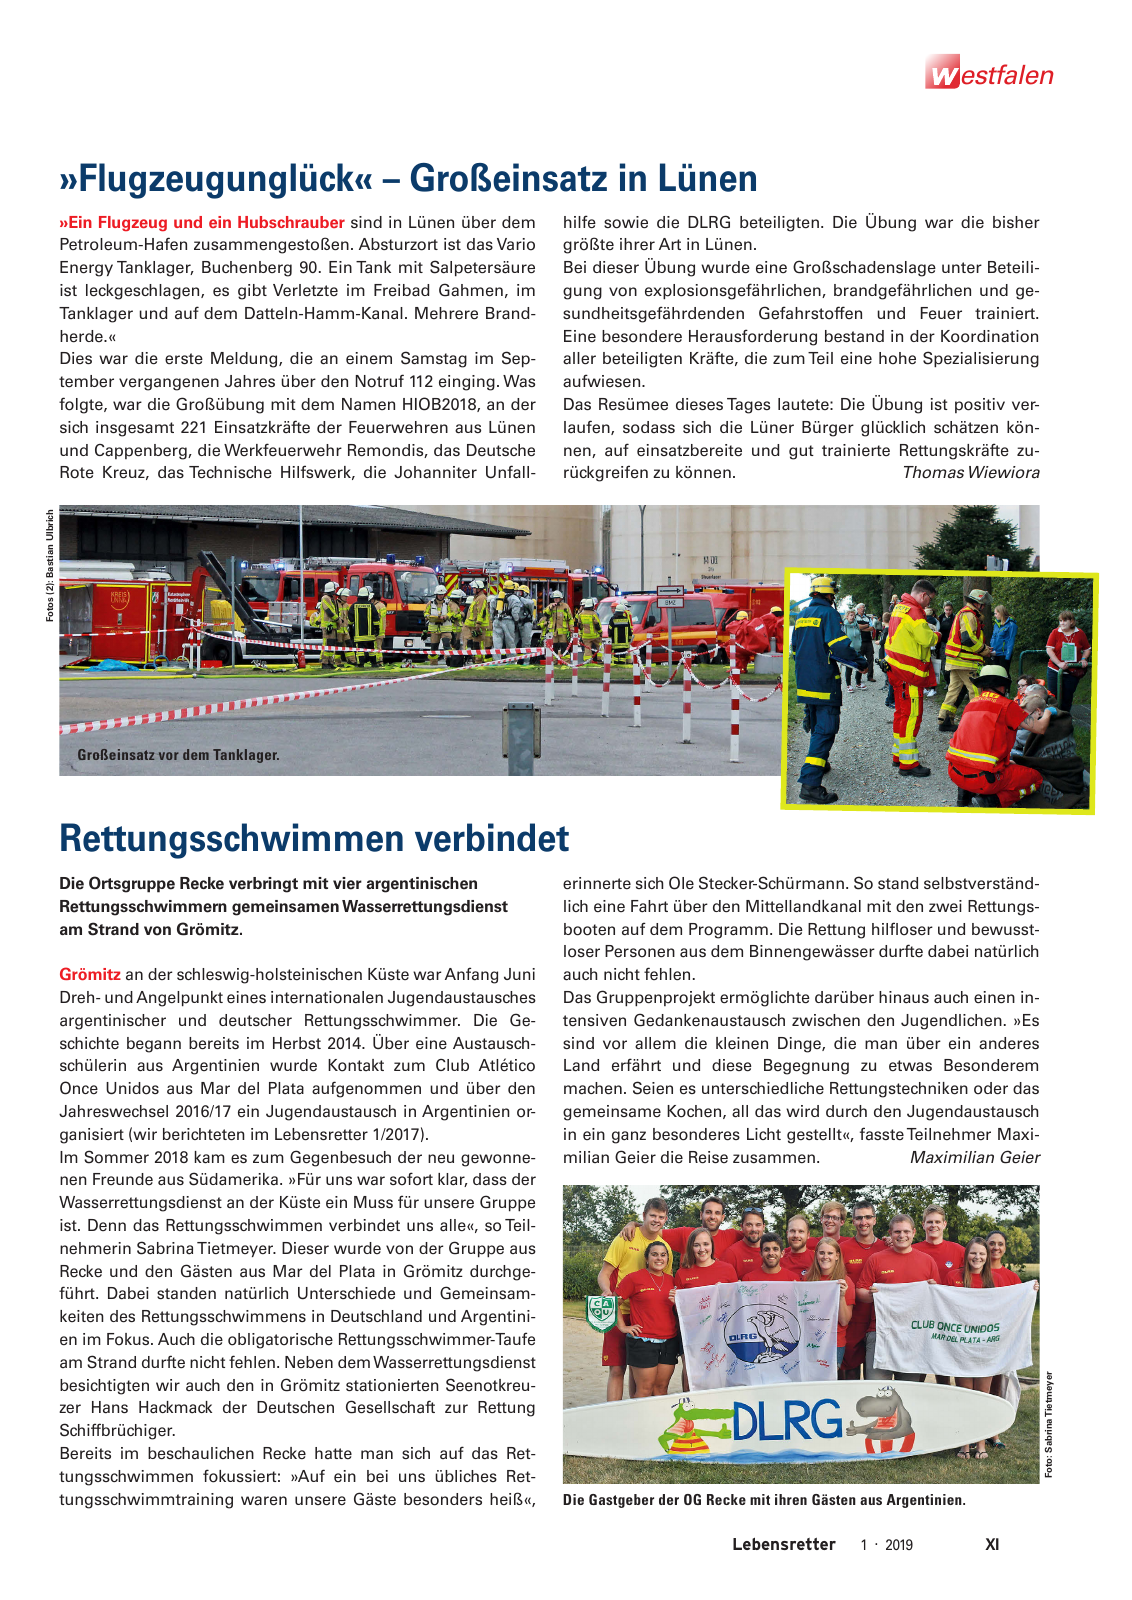 Vorschau Lebensretter 1/2019 –  Regionalausgabe Westfalen Seite 13